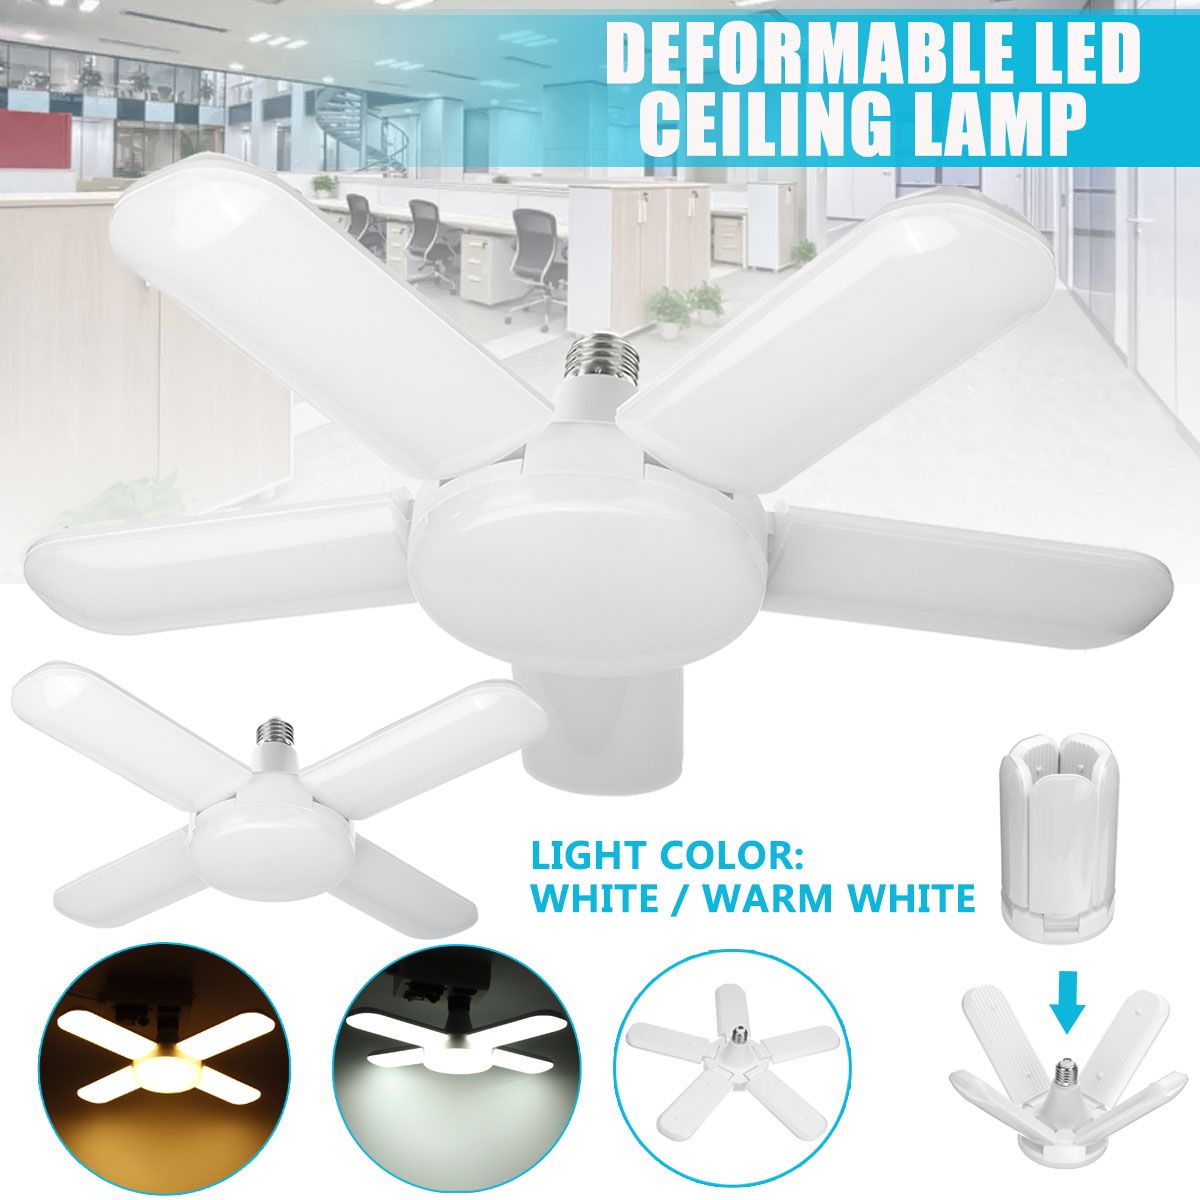 80W-85-265V-E27-LED-Garage-Shop-Work-Light-Ceiling-Deformable-Adjustable-Lamp-1732610